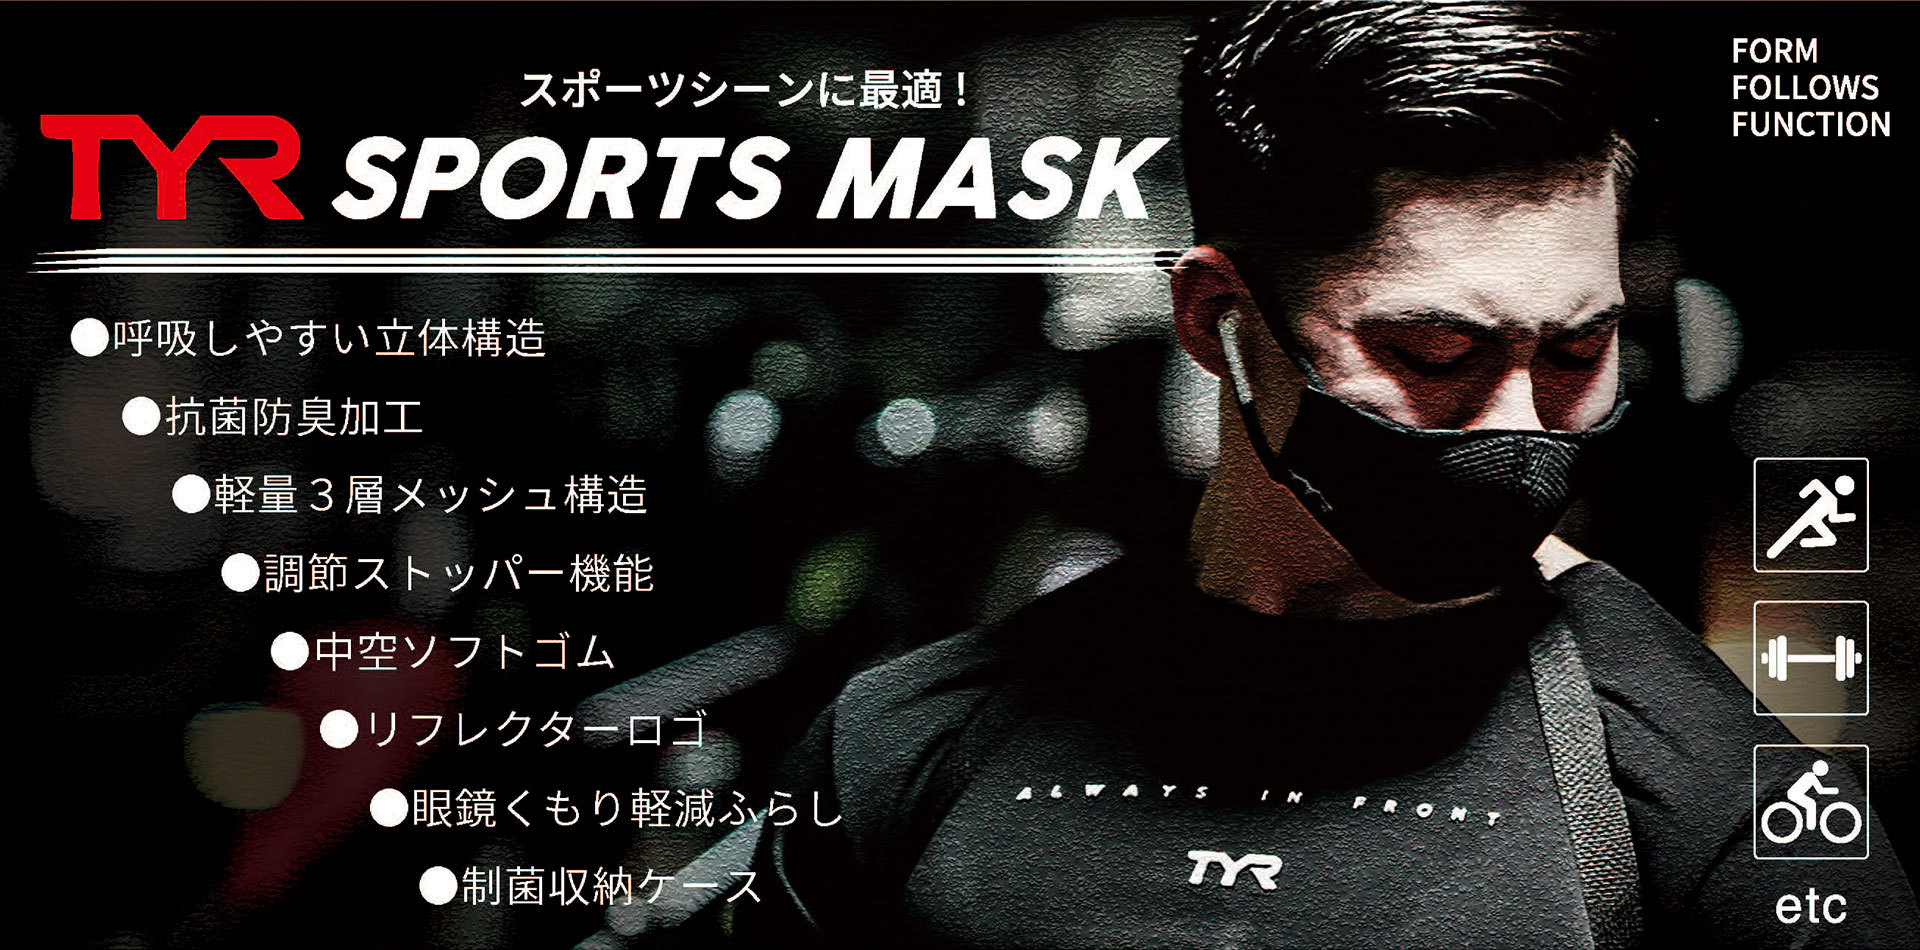 殺菌効果のある紫外線を使ってマスクを5分で除菌！
川崎市の敬老祝事業の敬老祝品に「紫外君」採用